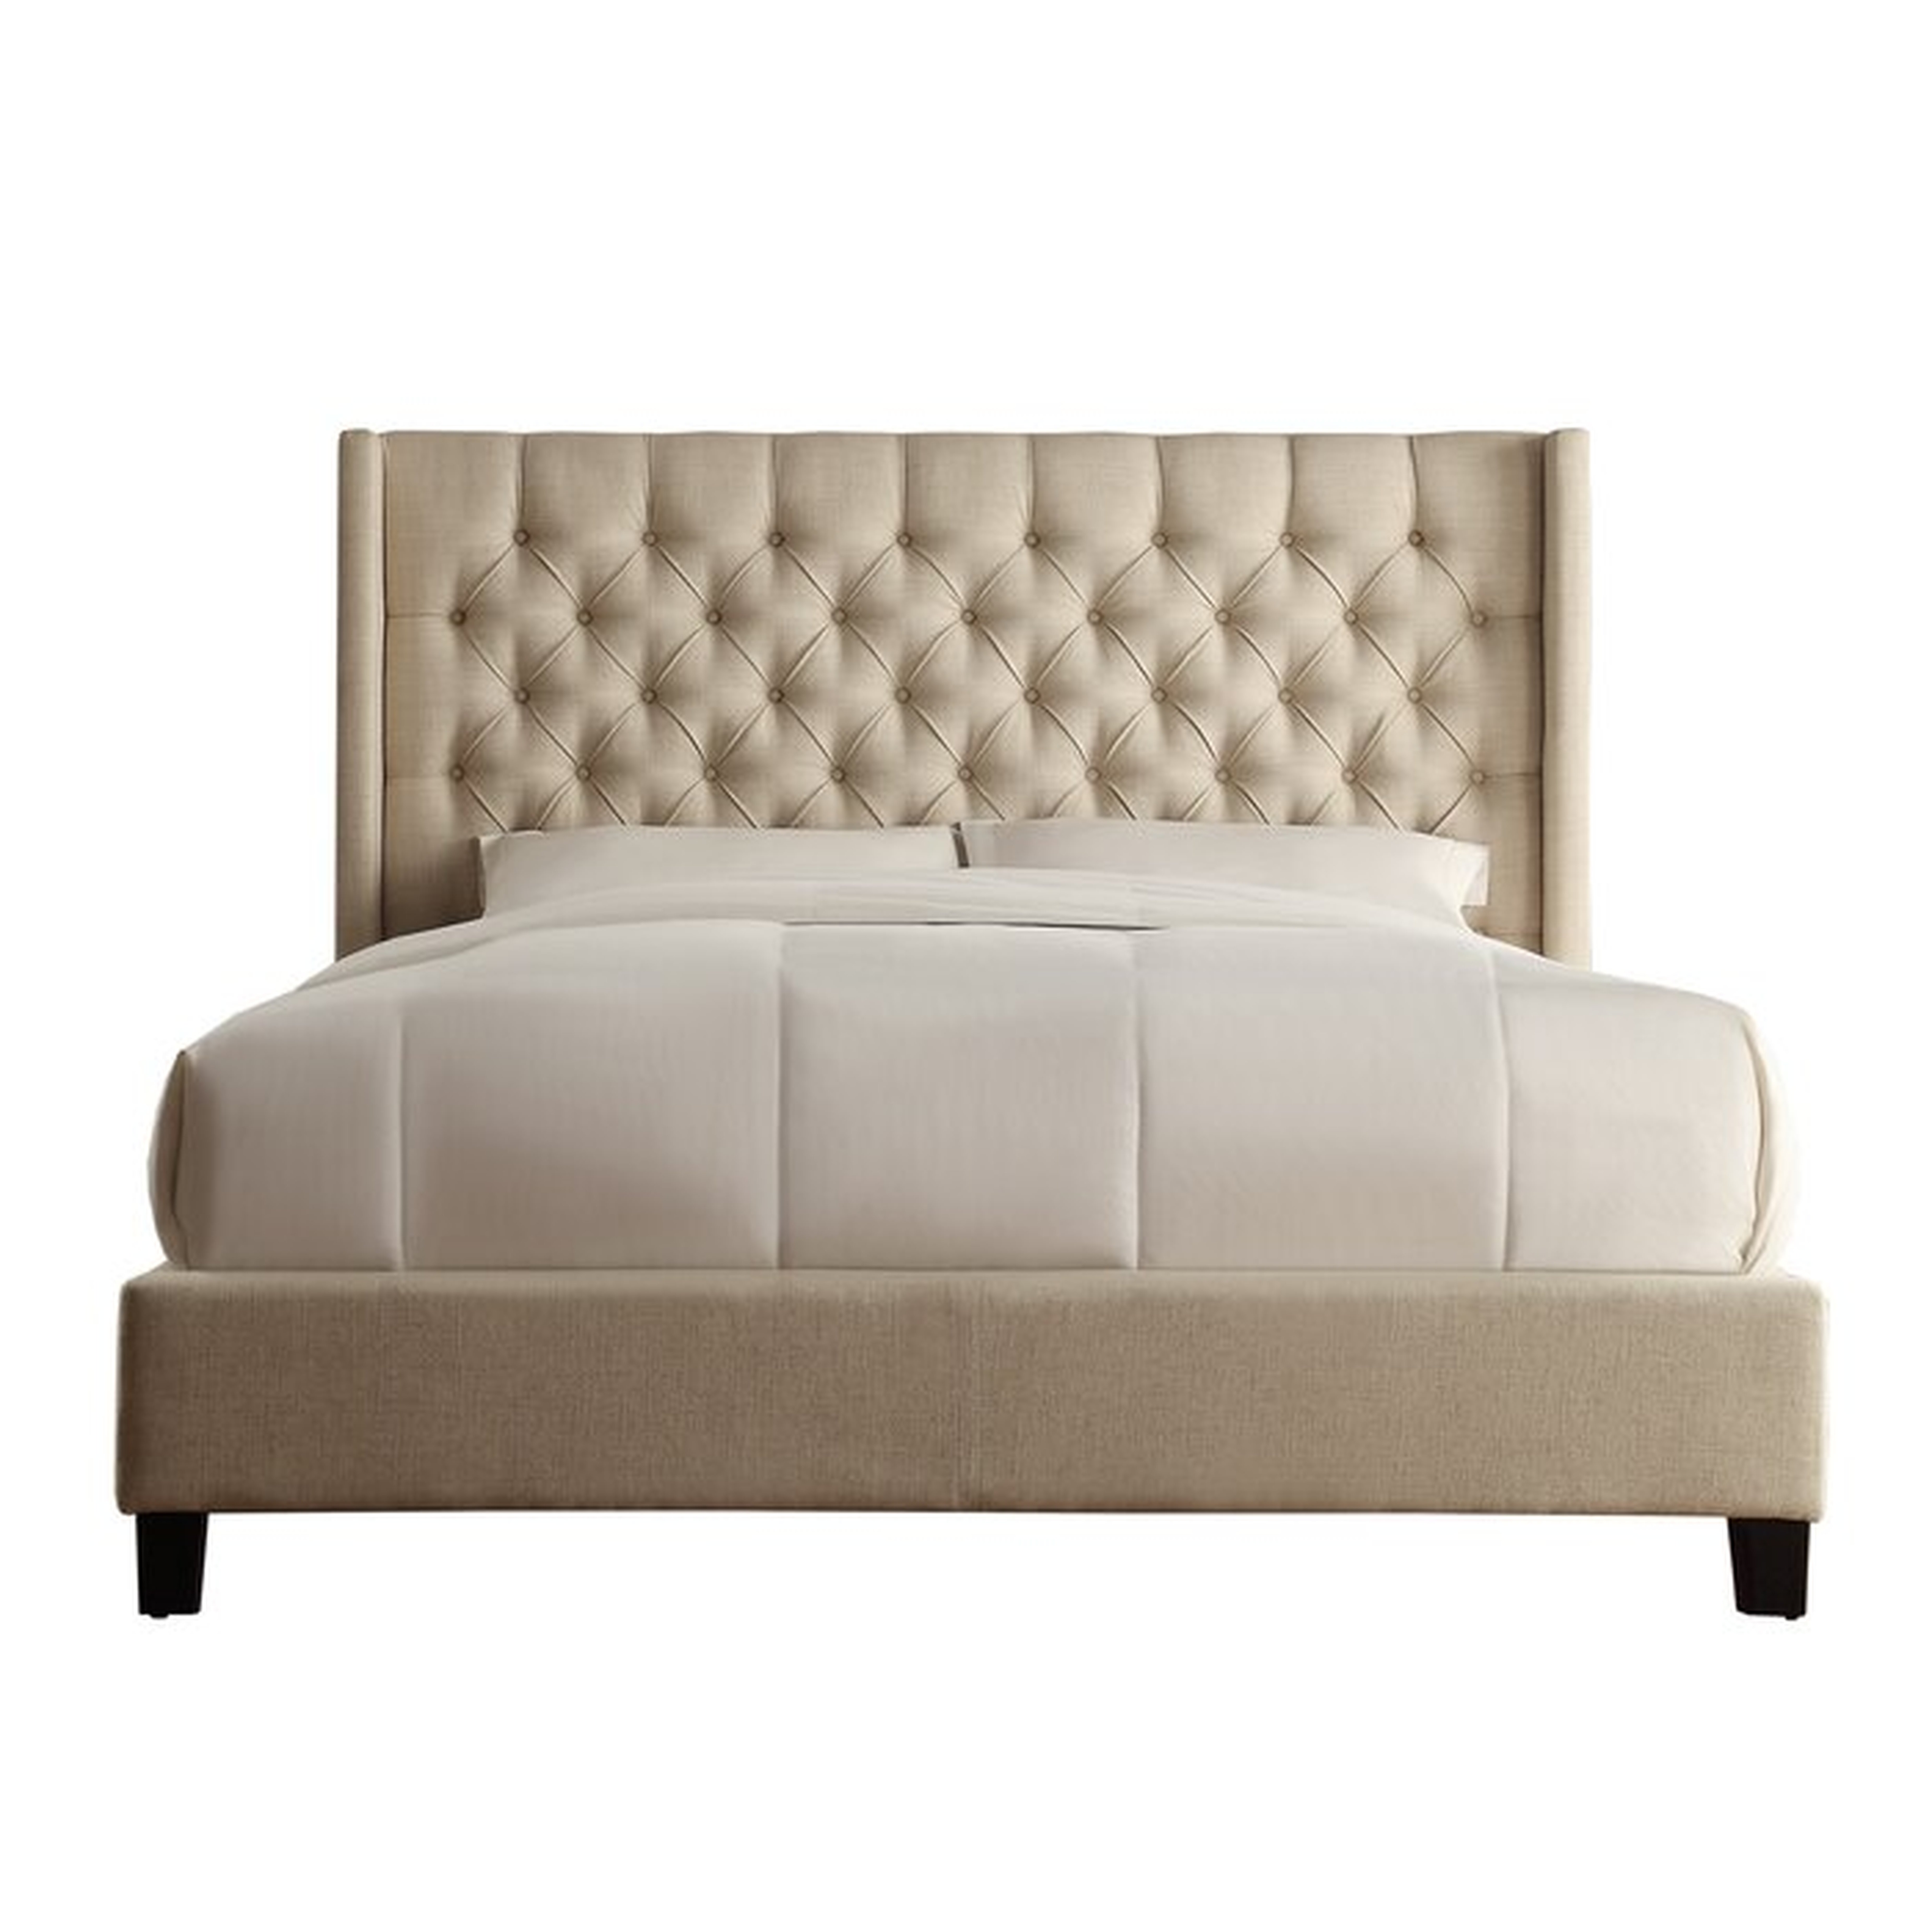 Cassville Upholstered Standard Bed - Wayfair